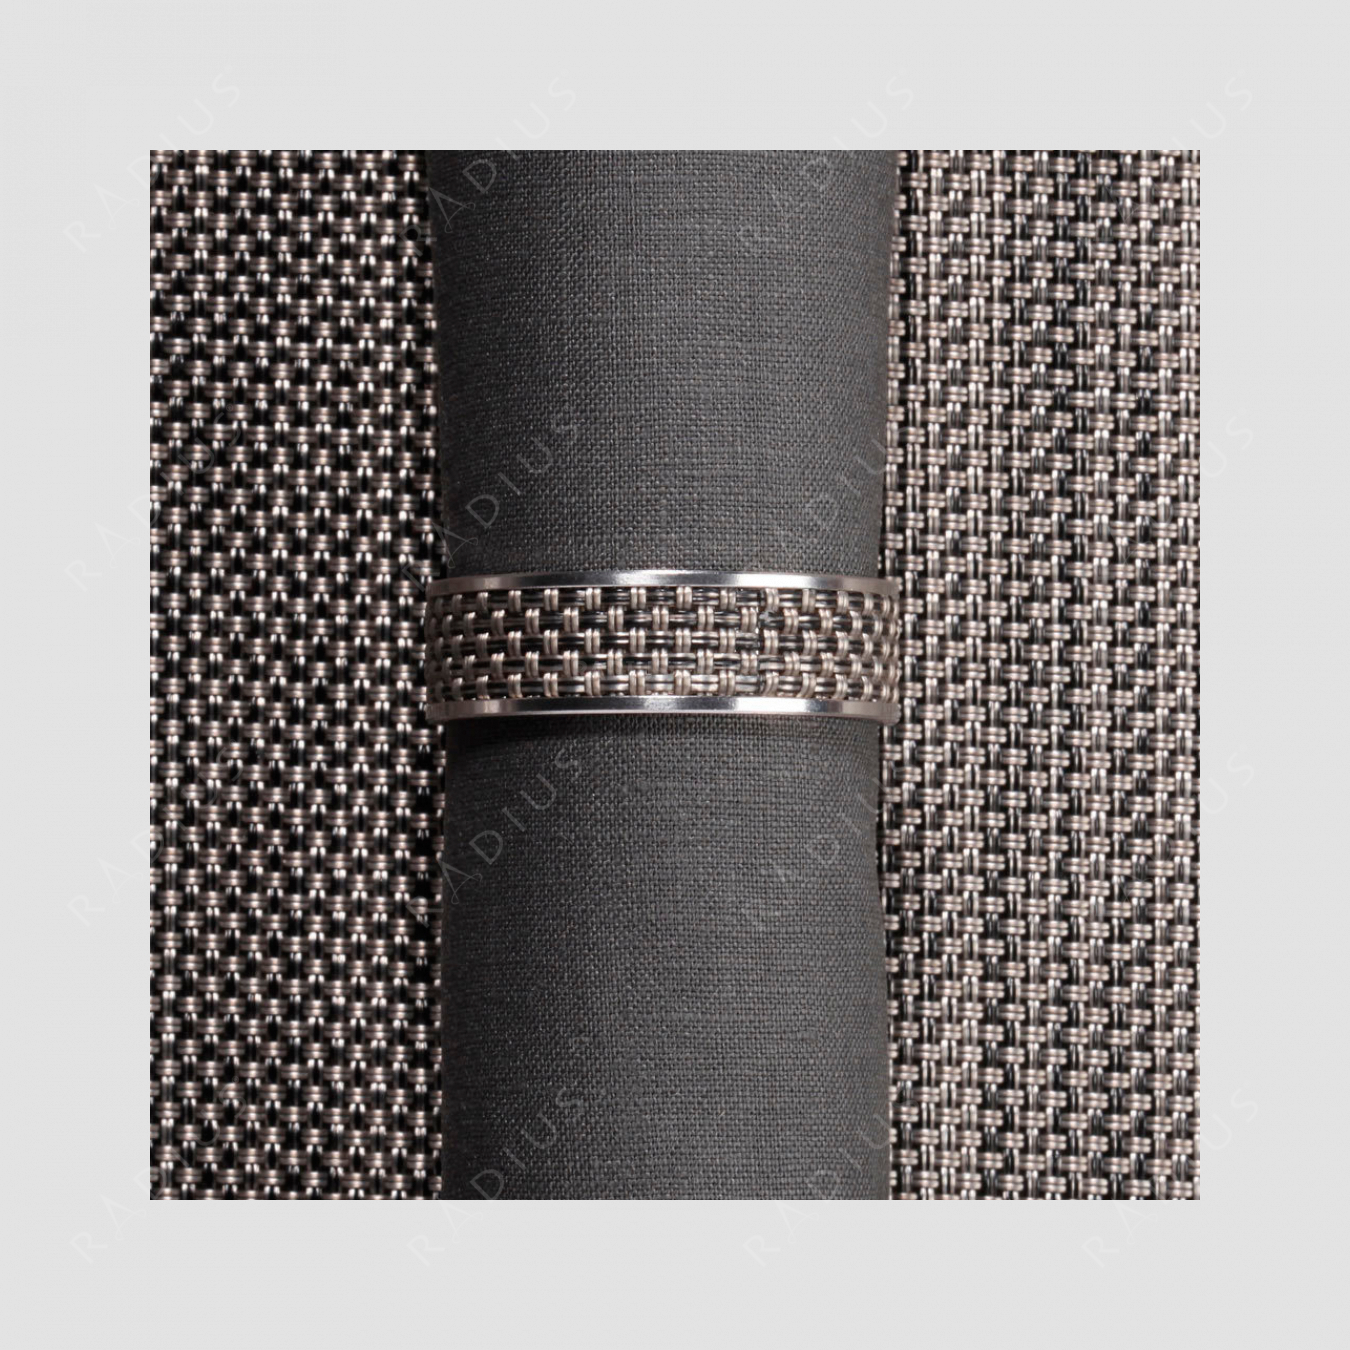 Кольцо для салфеток Light grey, серия Stainless steel, CHILEWICH, США